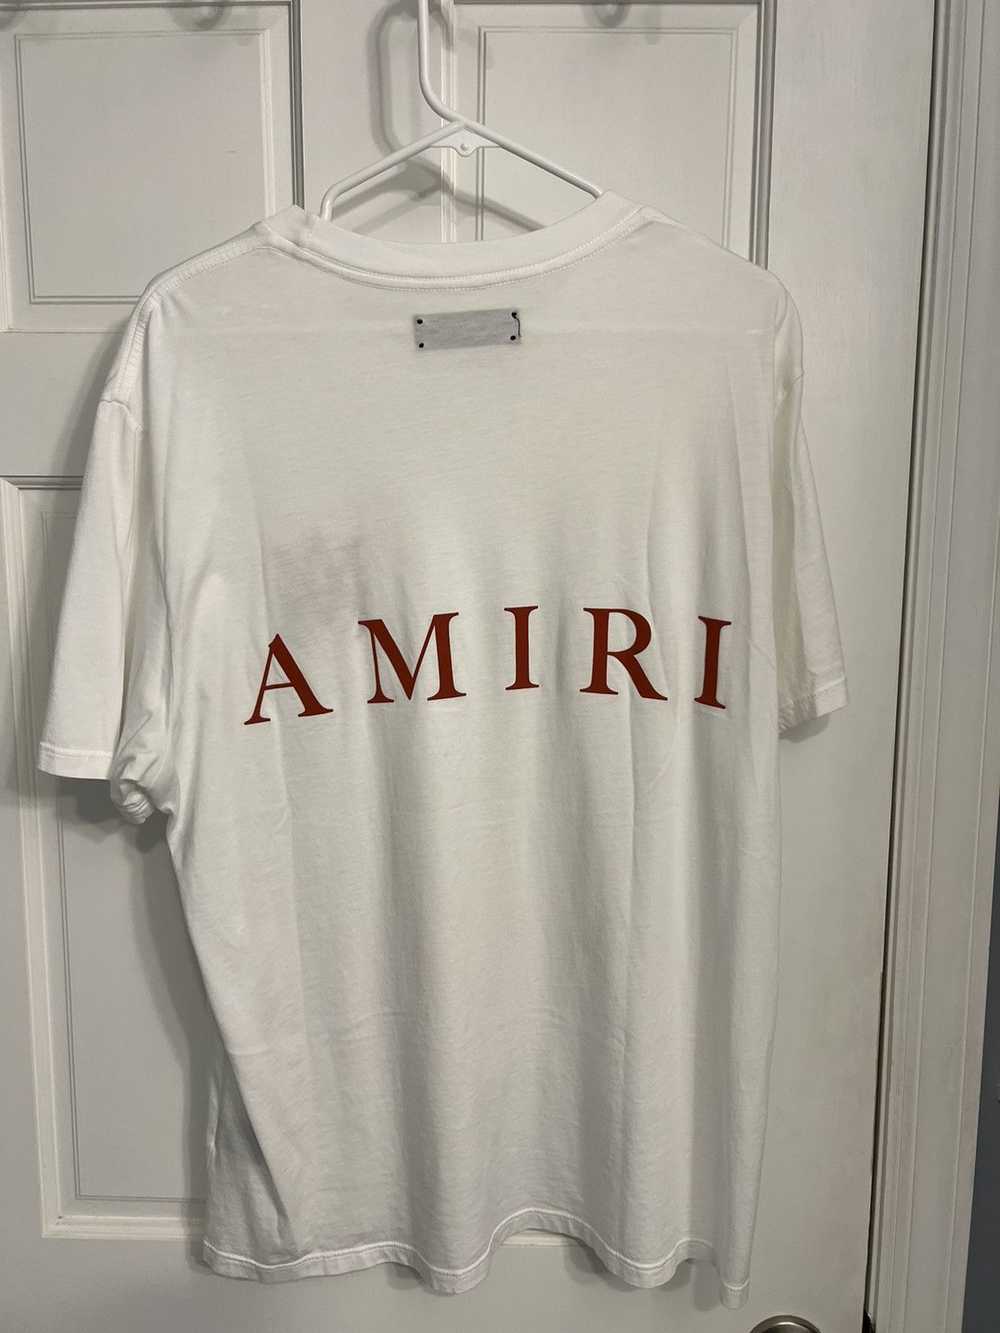 Amiri Amiri Logo T shirt white size large - image 4